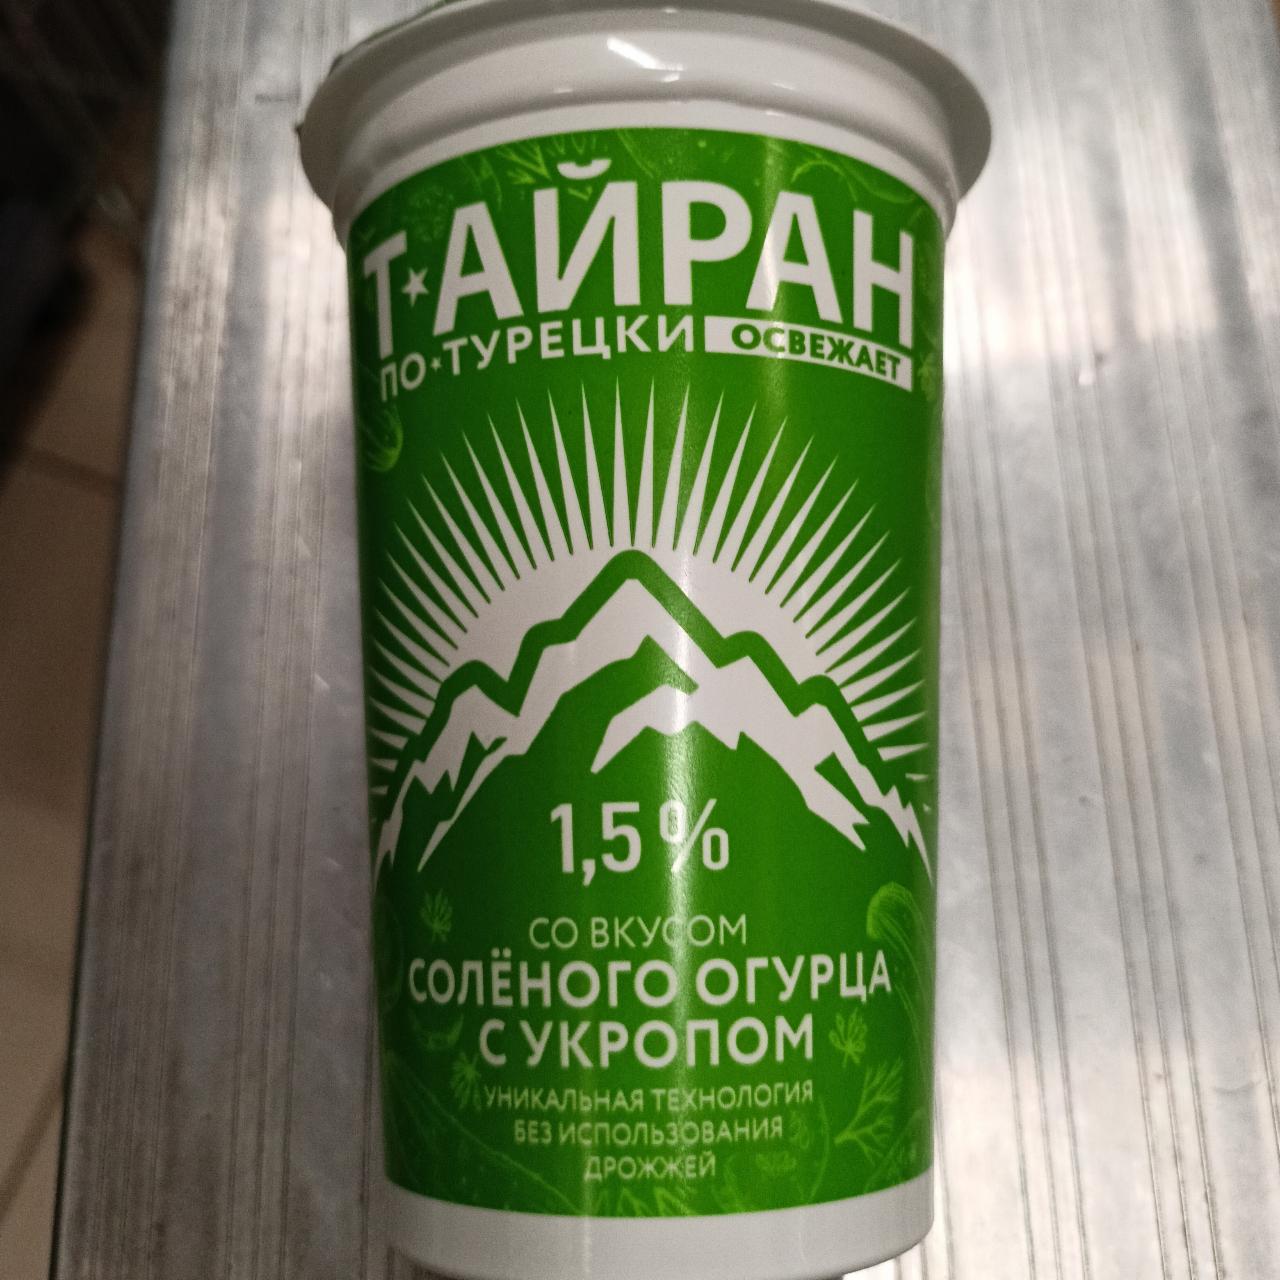 Фото - Тайран по-турецки со вкусом соленого огурца с укропом 1.5% Молочные горки